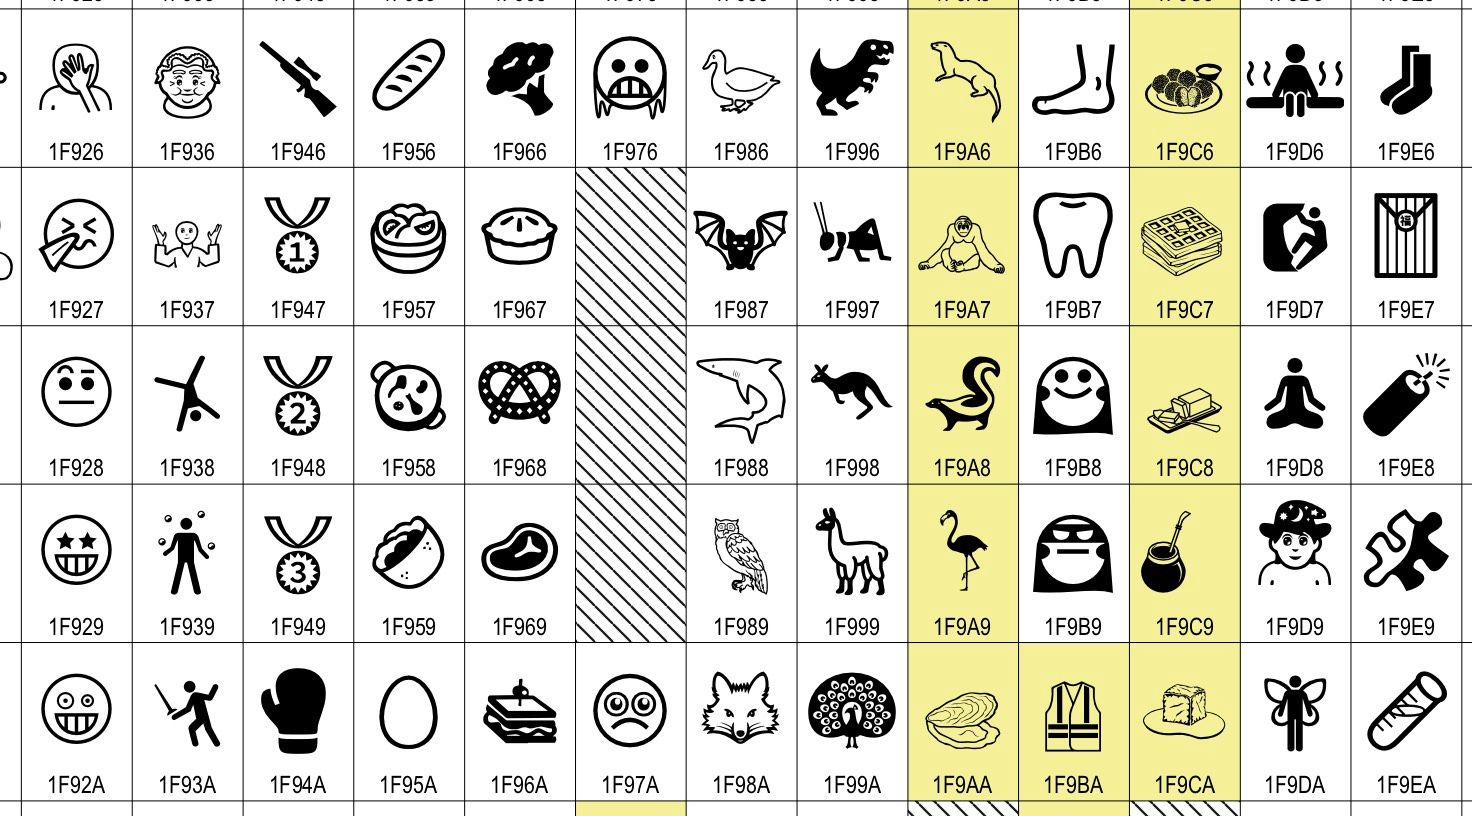 10 اختلافات ملحوظة بين Unicode و ASCII في تحديث 2021 أخبار المدرسة الحالية